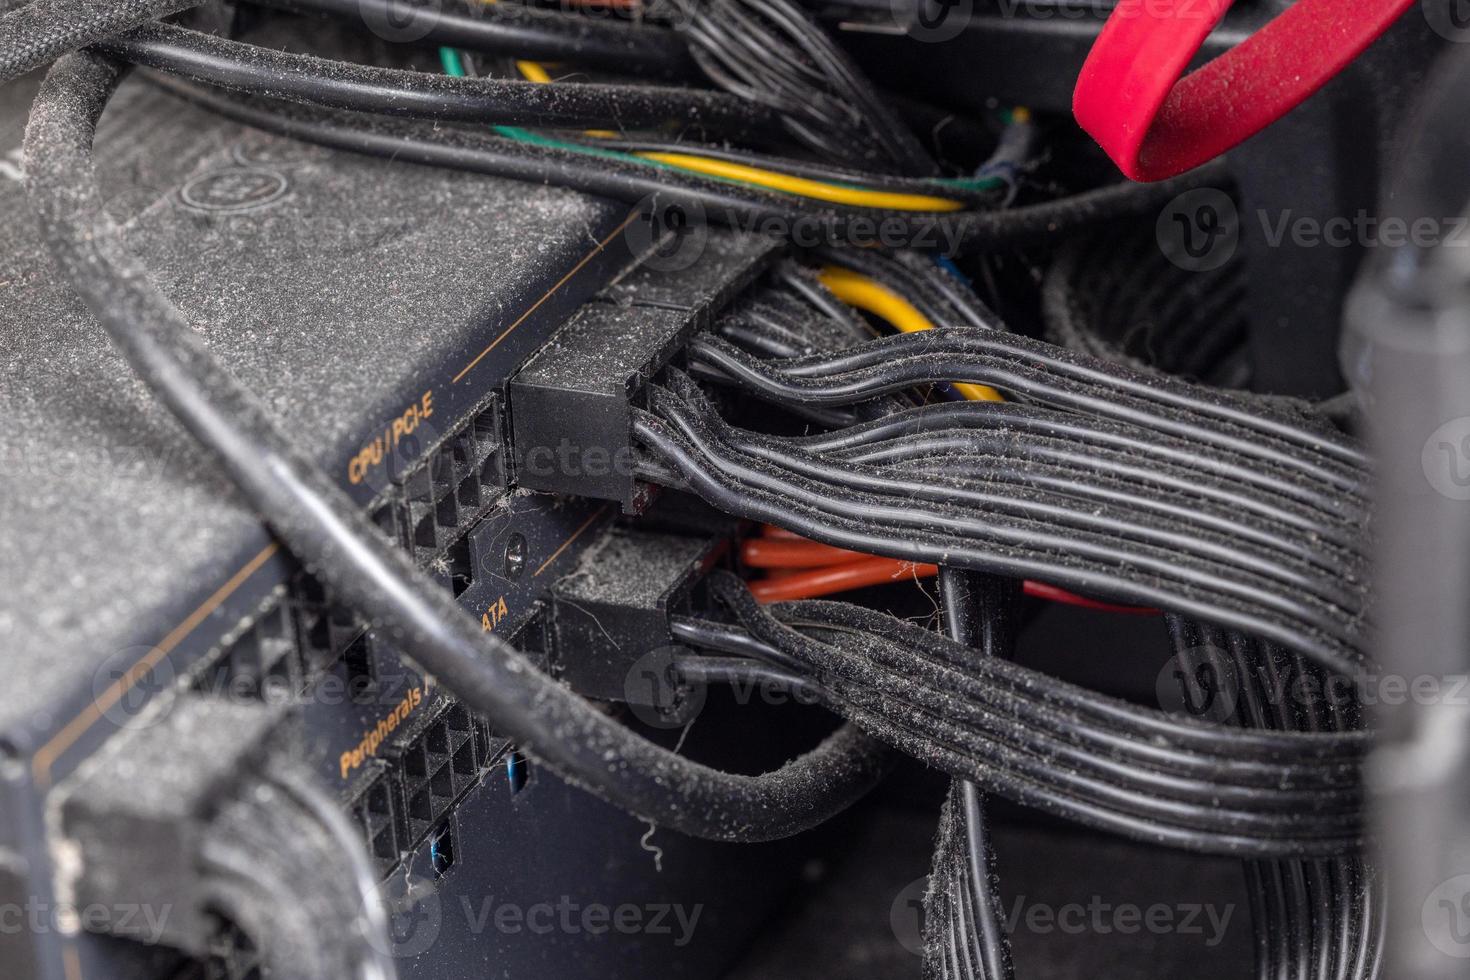 cables de alimentación internos negros y conectores cubiertos de polvo, piel y pelos foto